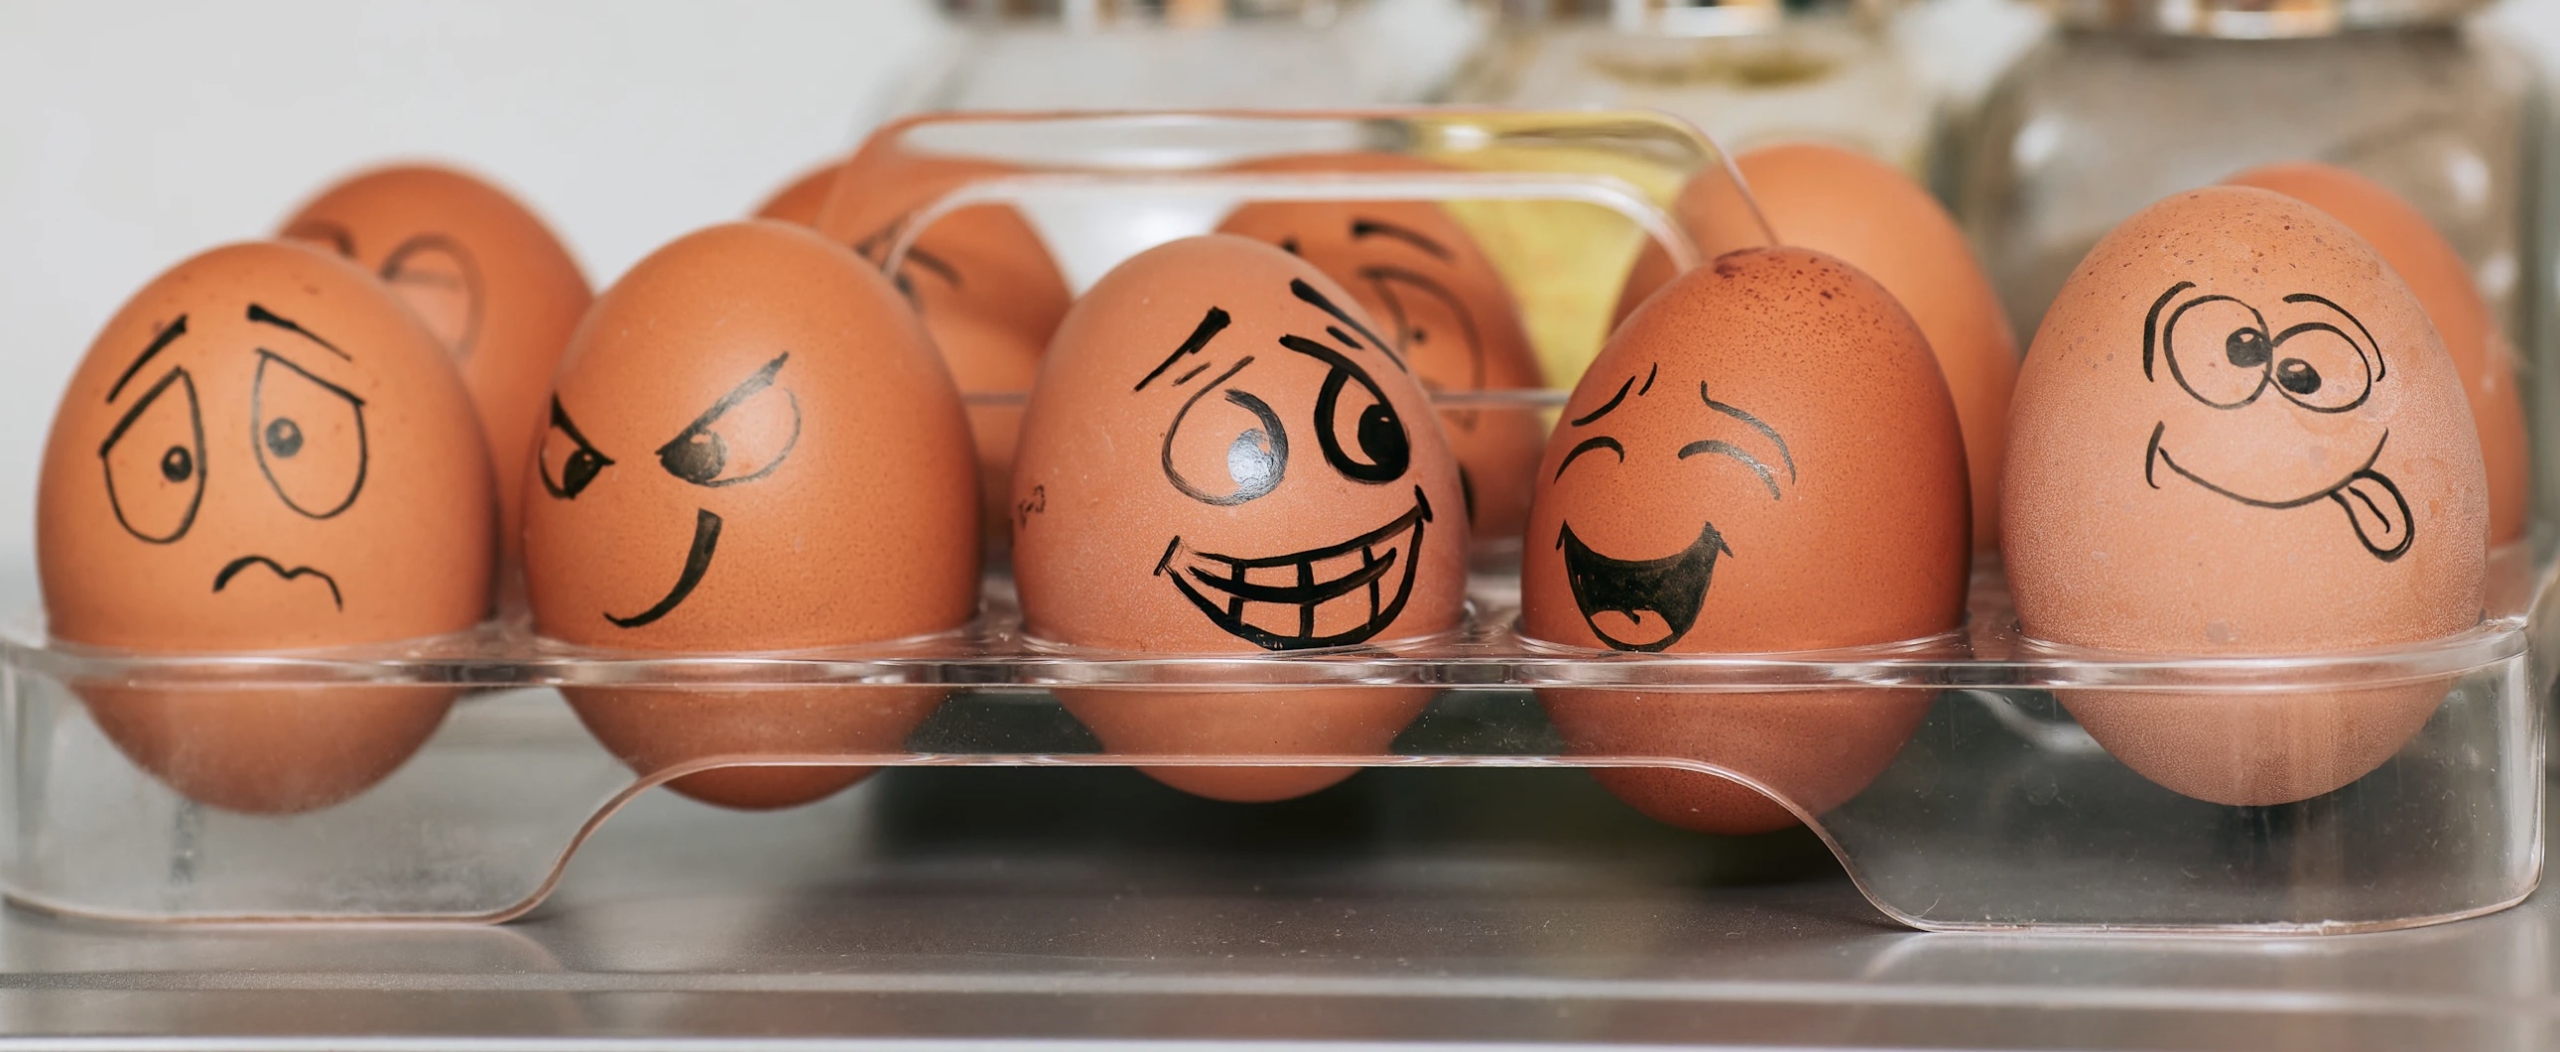 Снижение цен на яйца в обмен на деньги из бюджета: птицефабрики выдвинули ультиматум